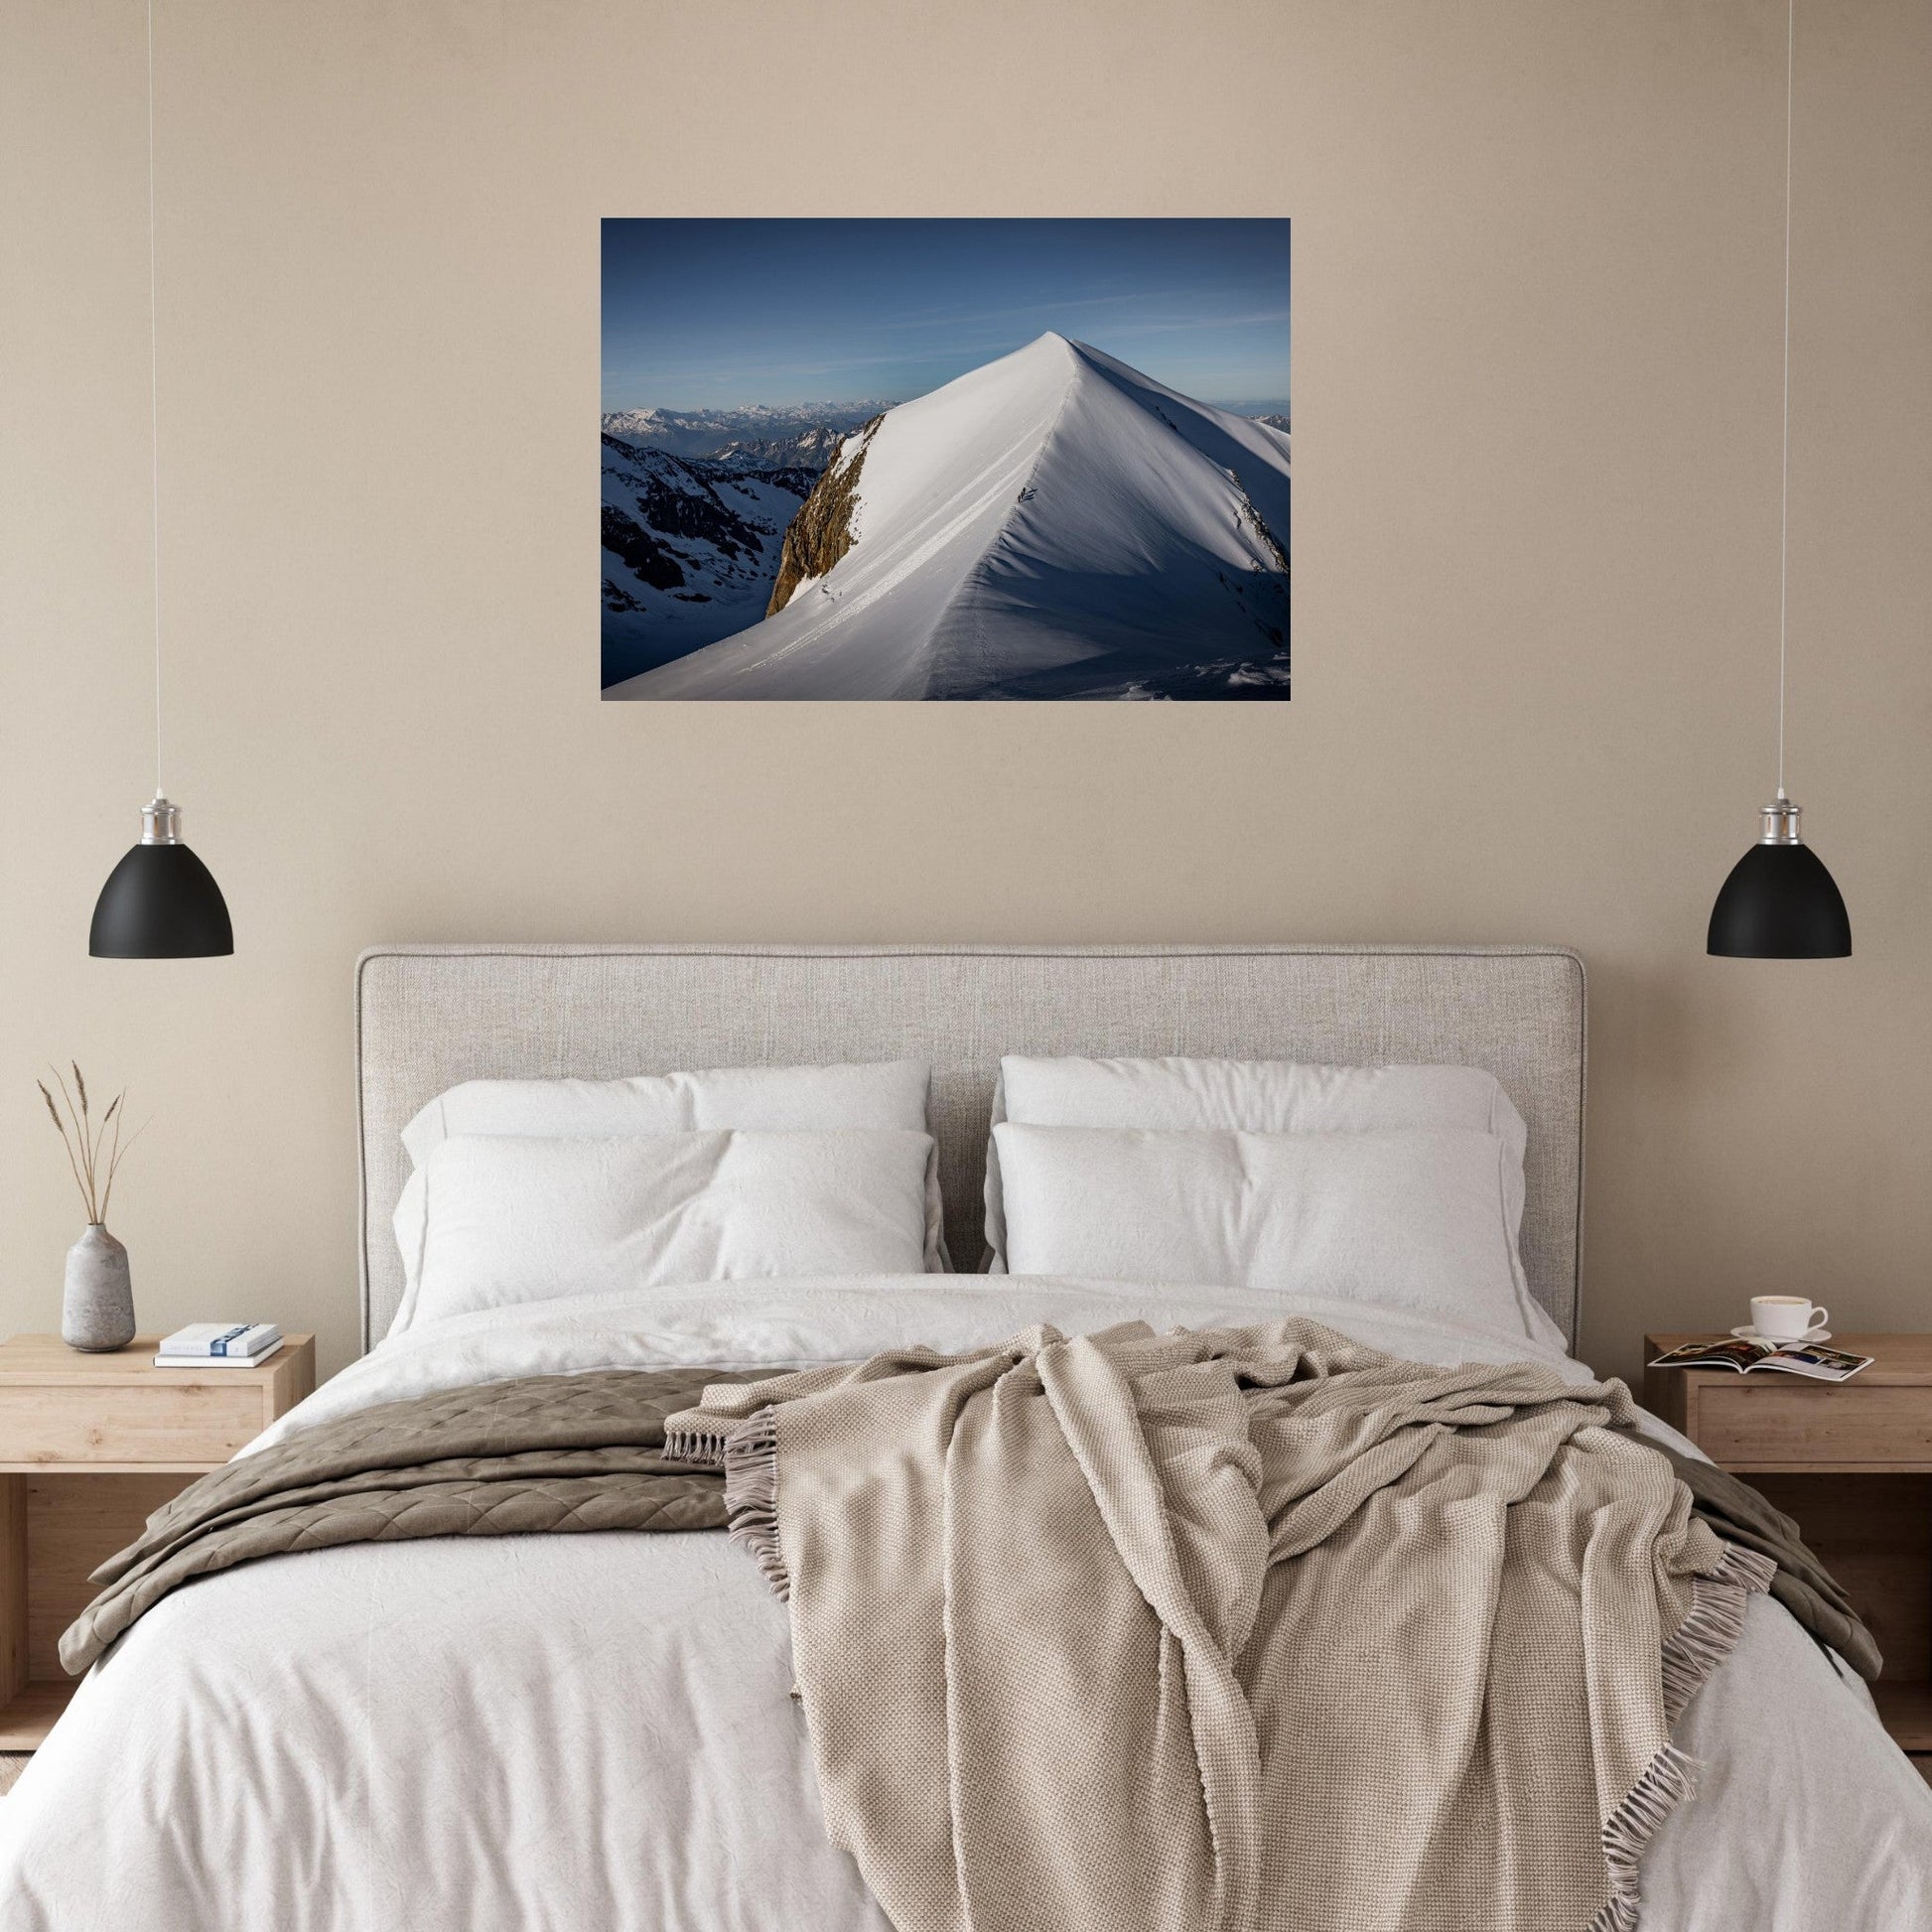 Vente Photo du Dome de Miage, Massif du Mont-Blanc - Tableau photo alu montagne